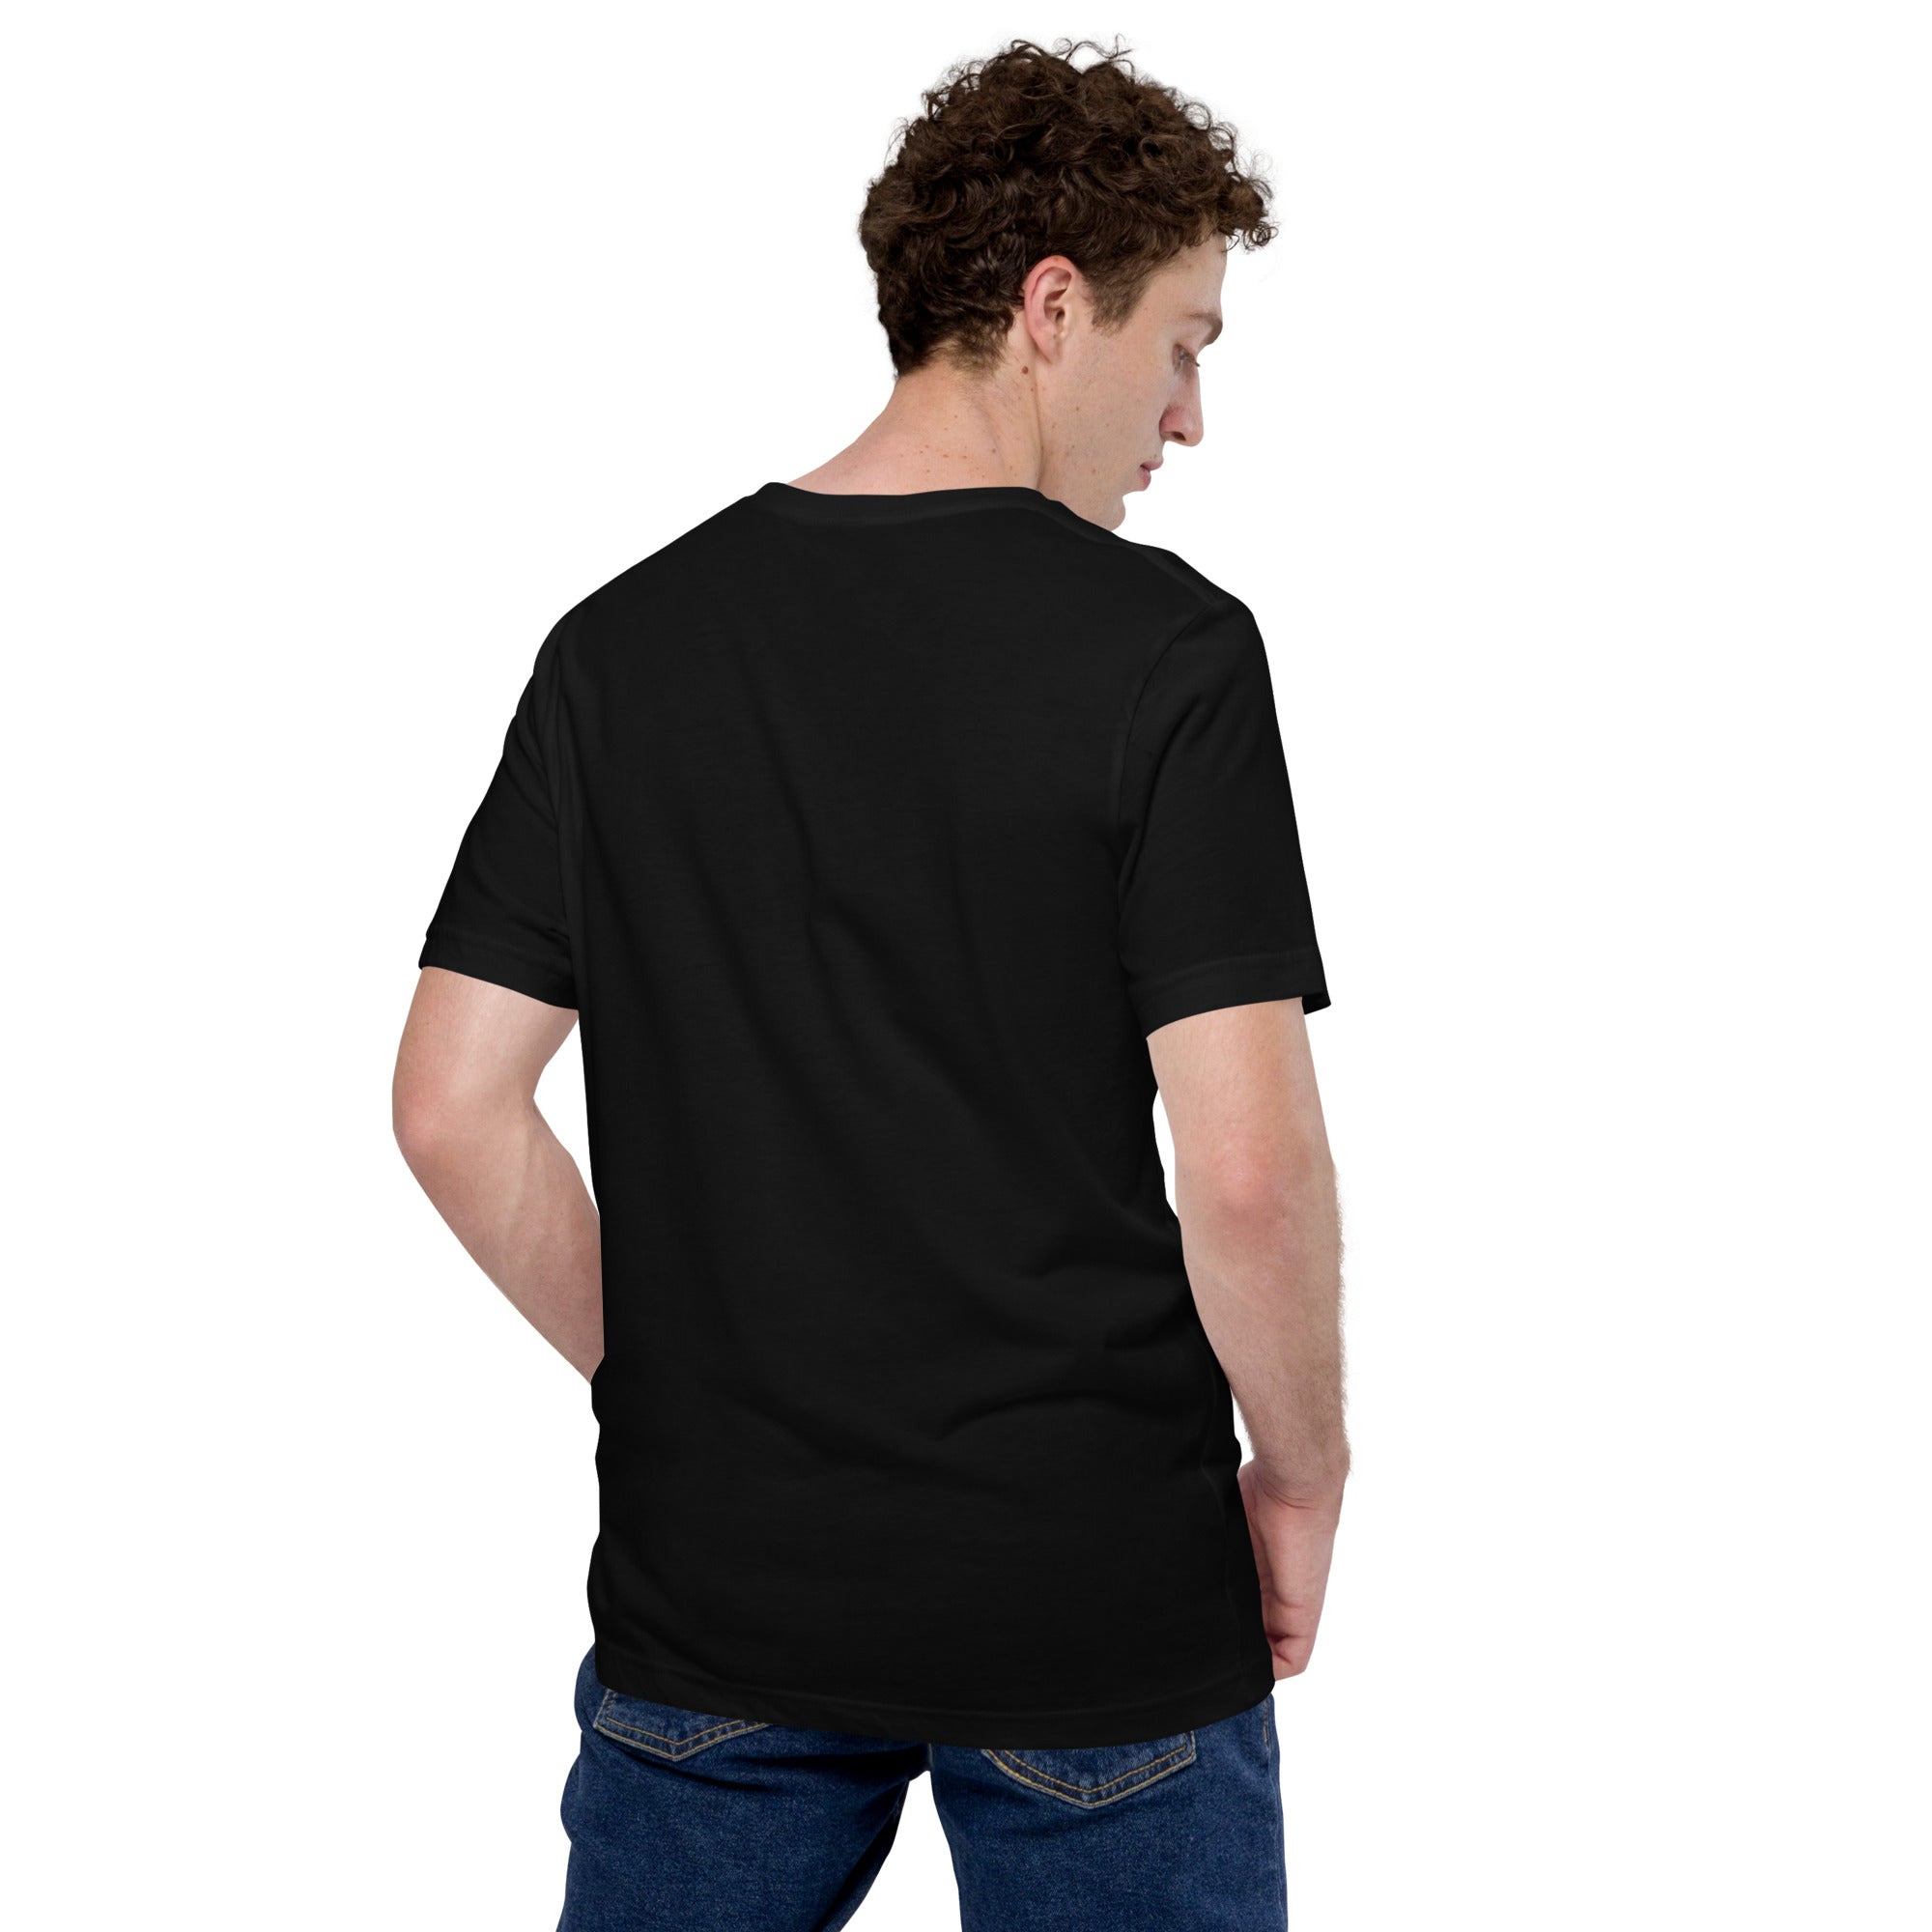 Neonmotte - Unisex-T-Shirt mit Druck